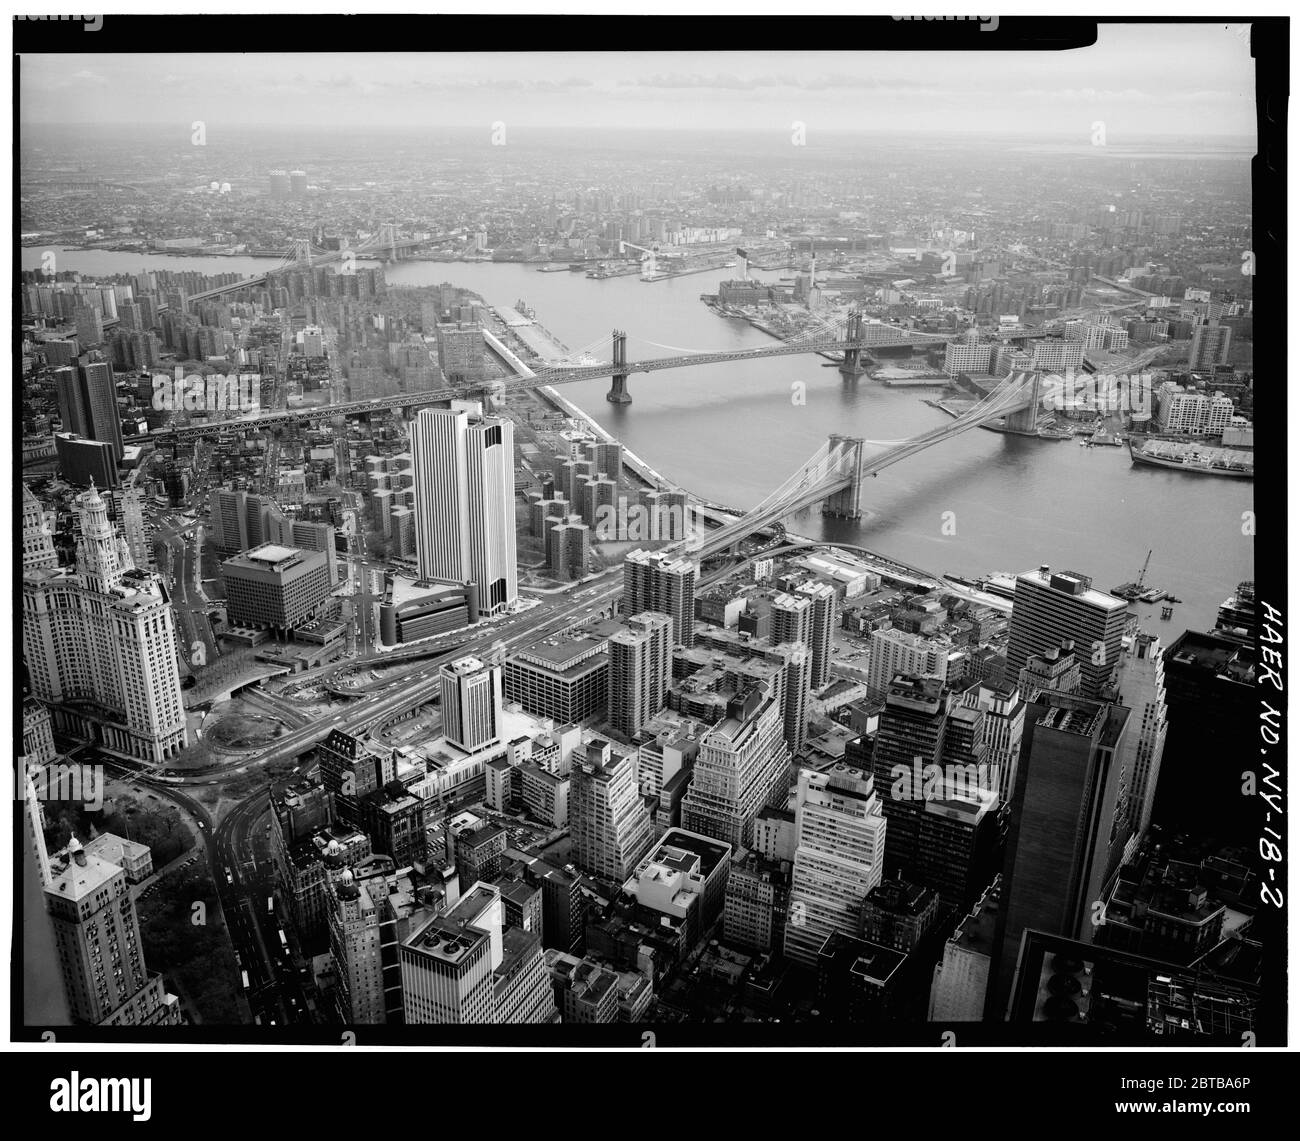 1982, NEW YORK , Etats-Unis : vue depuis le sommet de la Tour du Commerce mondial . Pont de Brooklyn, Spanning East River entre Park Row , Manhattan et Sands Street , Brooklyn , New York, New York County, NY . Le pont suspendu de la grande rivière East, ouvert le jour 24 mai 1883 -- reliant les villes de New York et Brooklyn . Photo de Jet Lowe ( images du gouvernement américain ) - PONT DE BROOKLYN - PONTE DI BROOKLYN - FOTO STORICHE - HISTOIRE - GEOGRAFIA - GÉOGRAPHIE - paysage - paesaggio - veduta - panorama - Fiume Hudson River - paysage - TORRI GEMELLE - TOURS JUMELLES --- Archivio GBB Banque D'Images